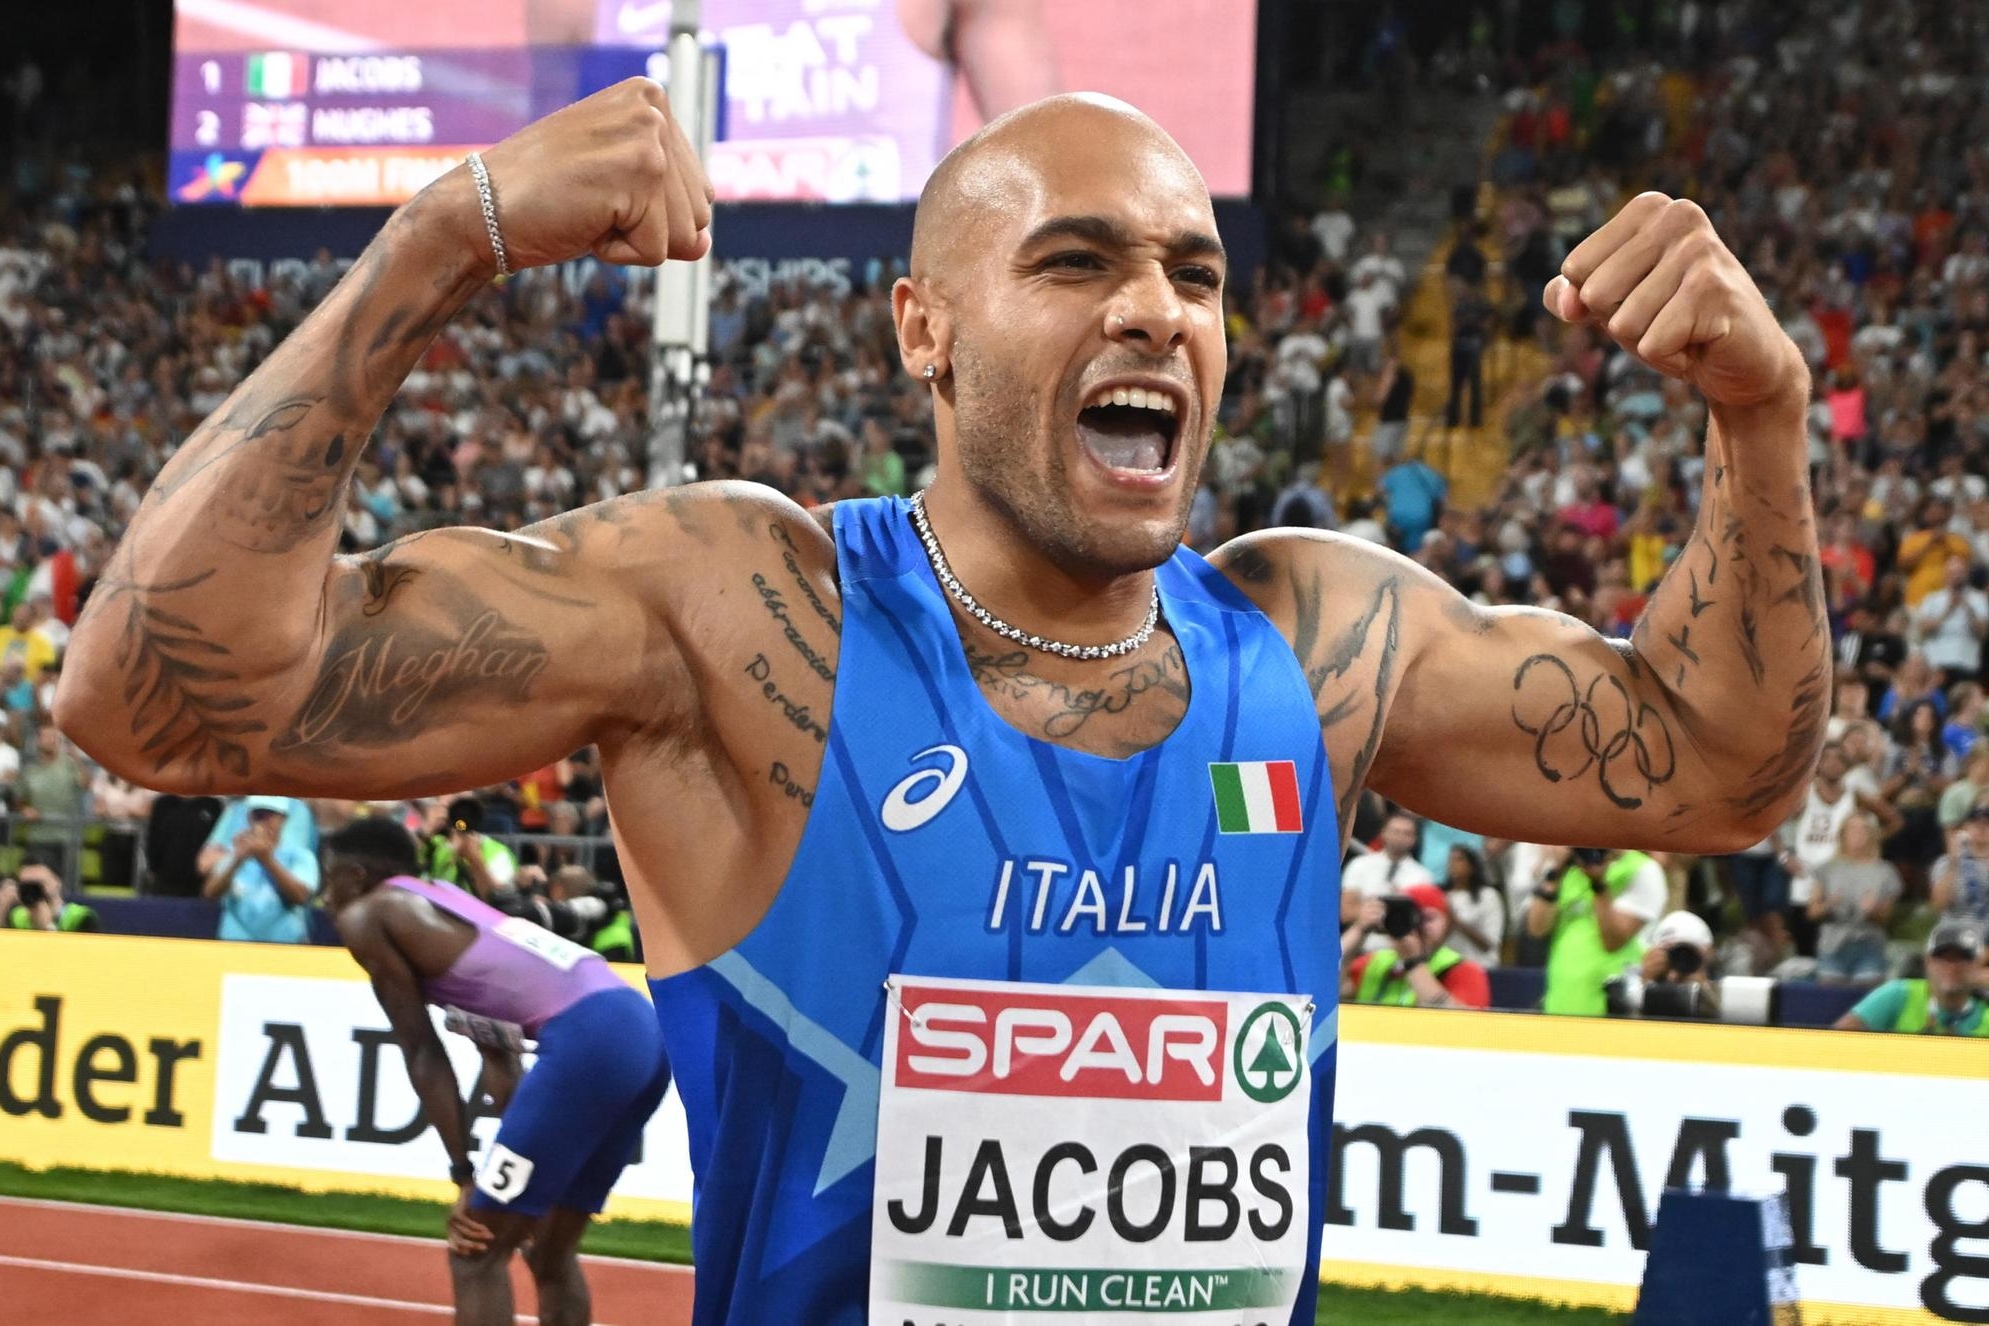 Jacobs vince l’oro nei 100 metri ed entra nella storia: “Medaglia che dà fiducia” (foto Ansa/Epa)